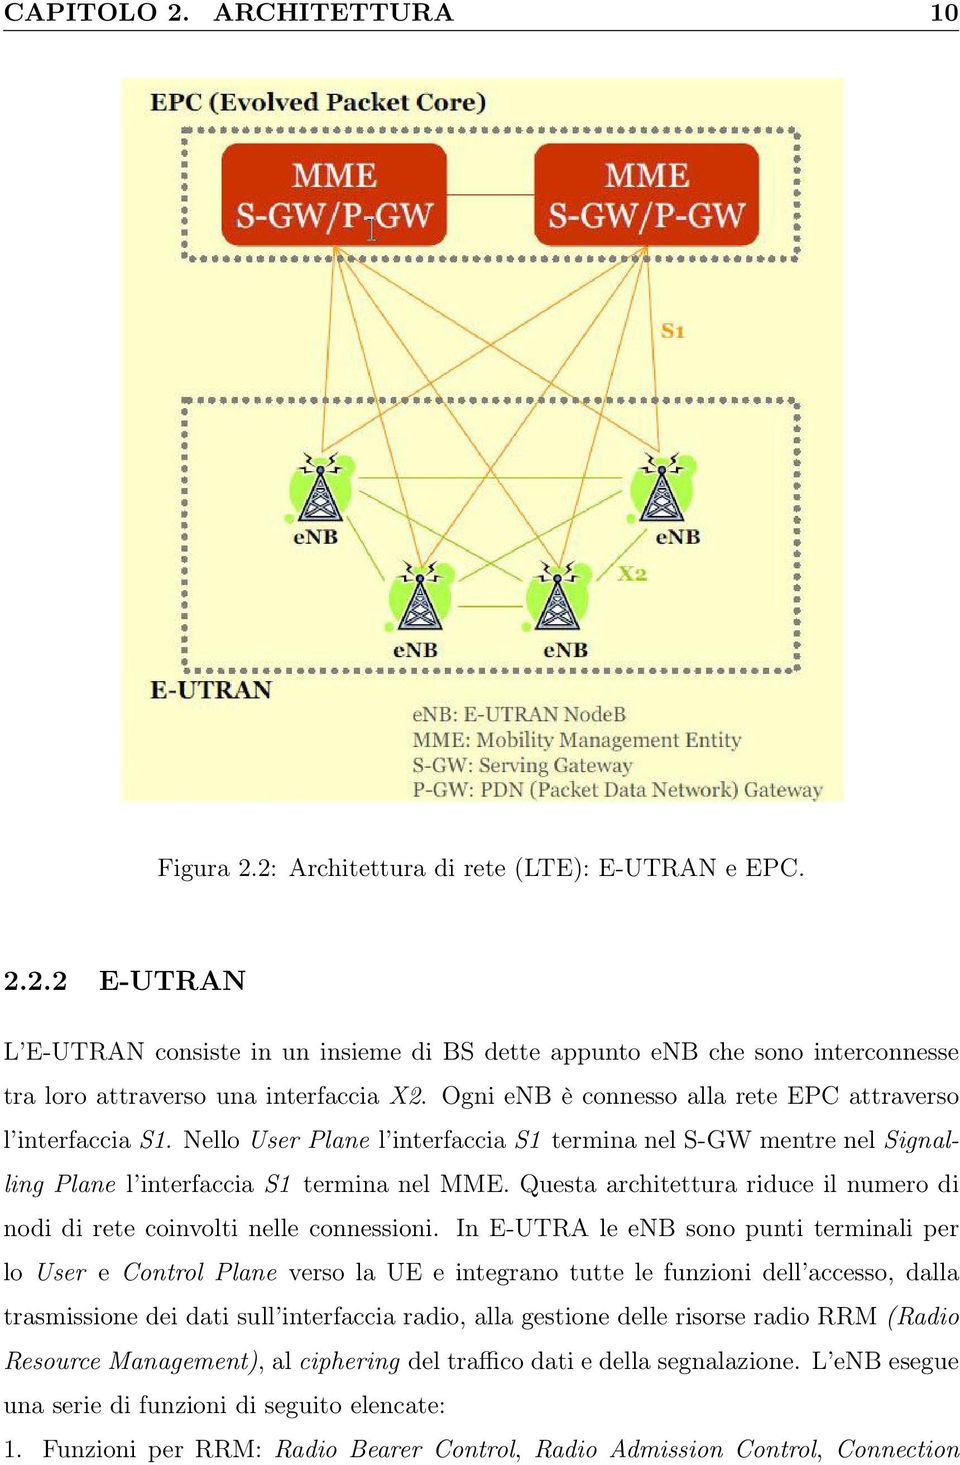 Questa architettura riduce il numero di nodi di rete coinvolti nelle connessioni.